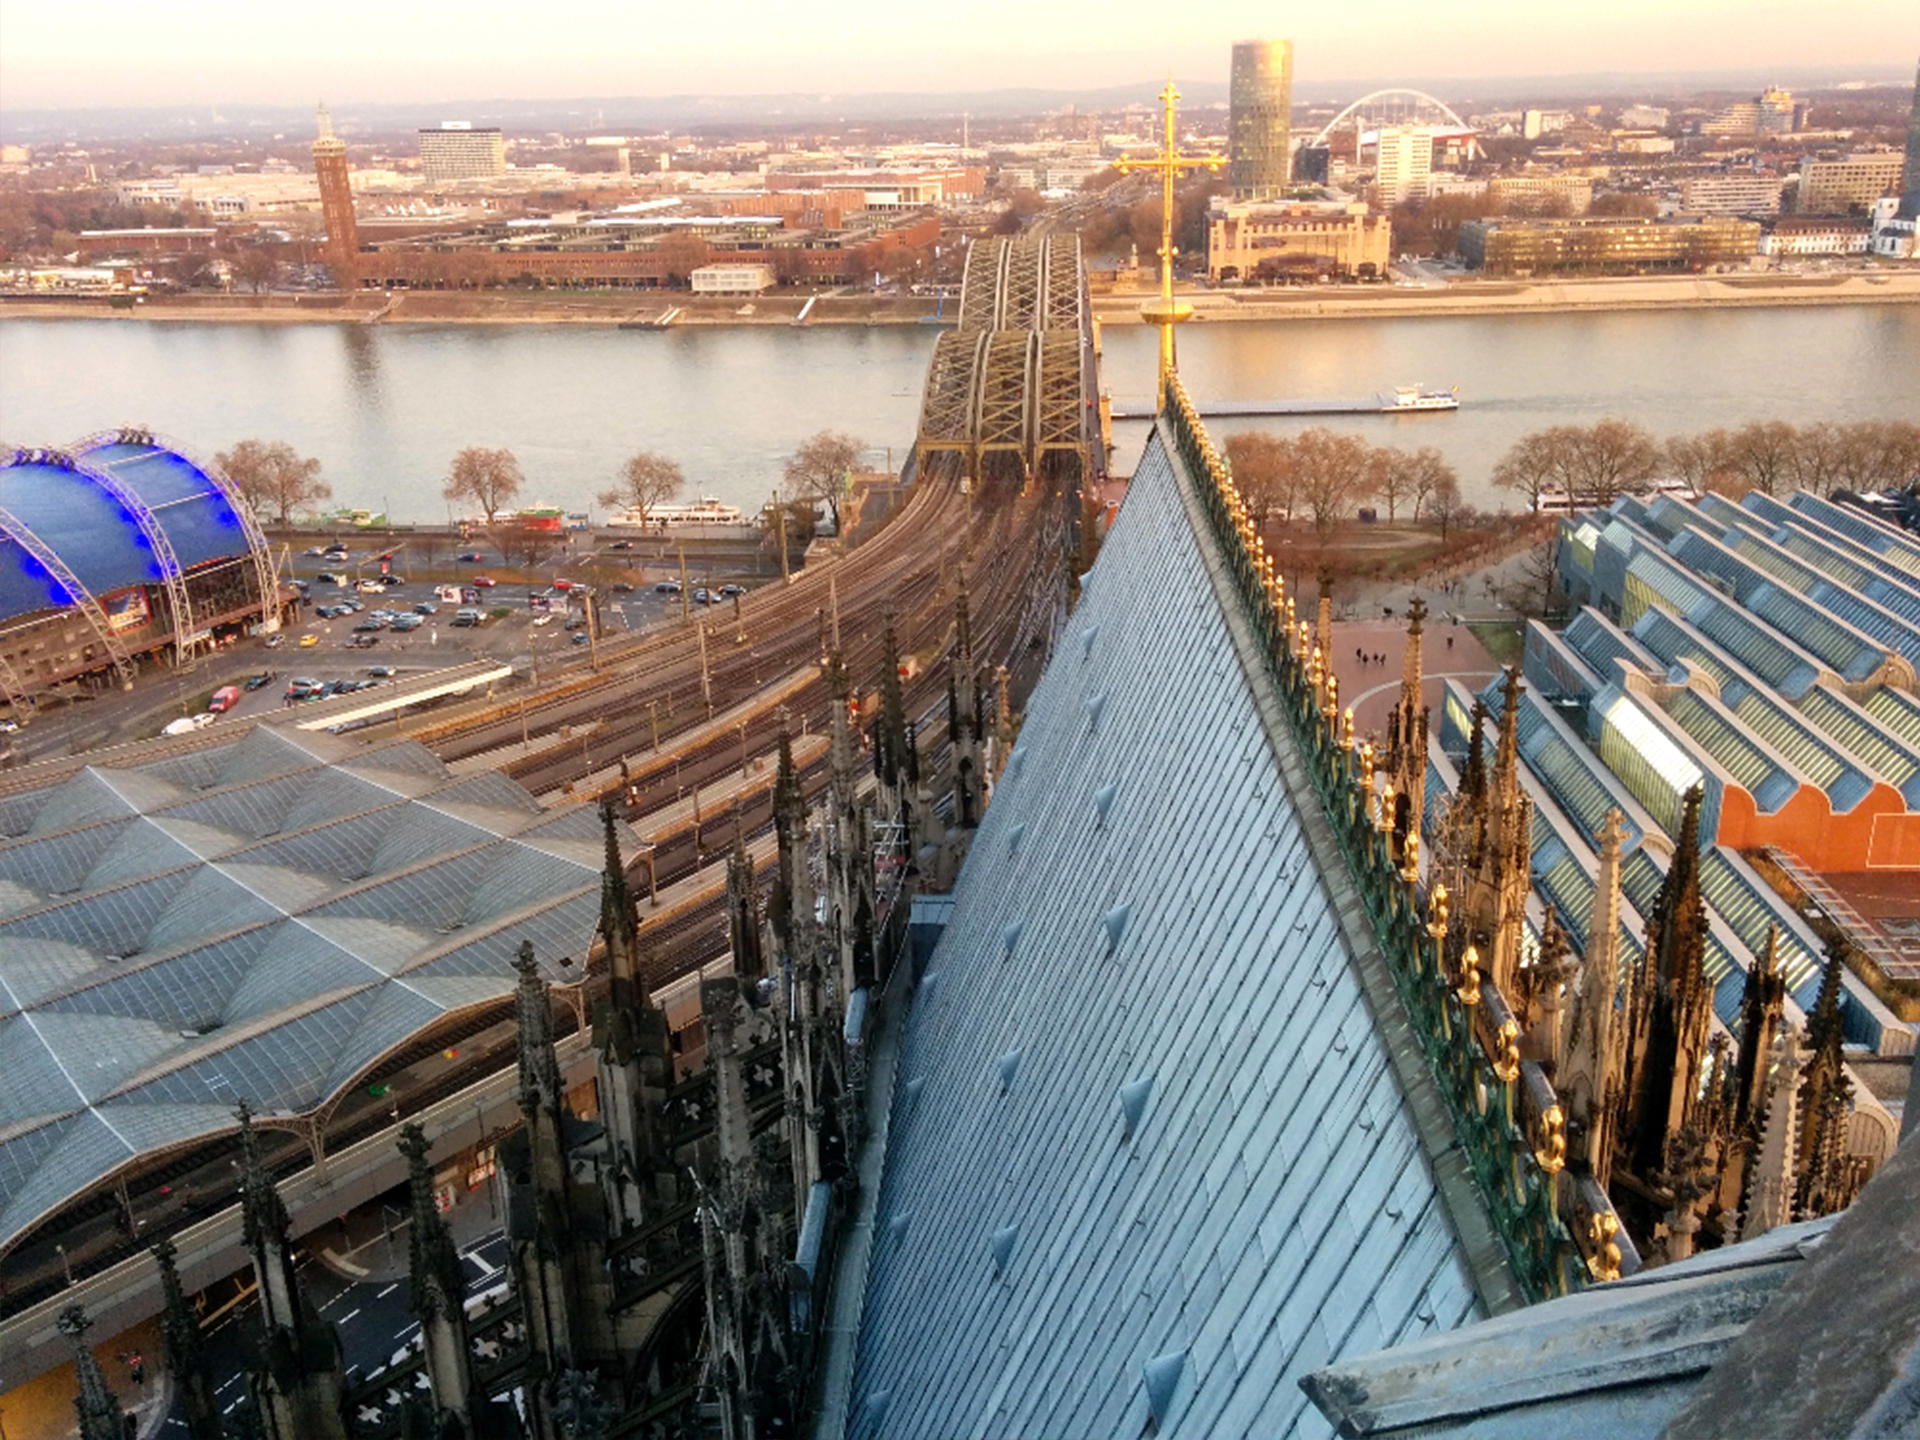 ケルン大聖堂から外を見た風景。鉄道橋の下を流れているのはライン川です。